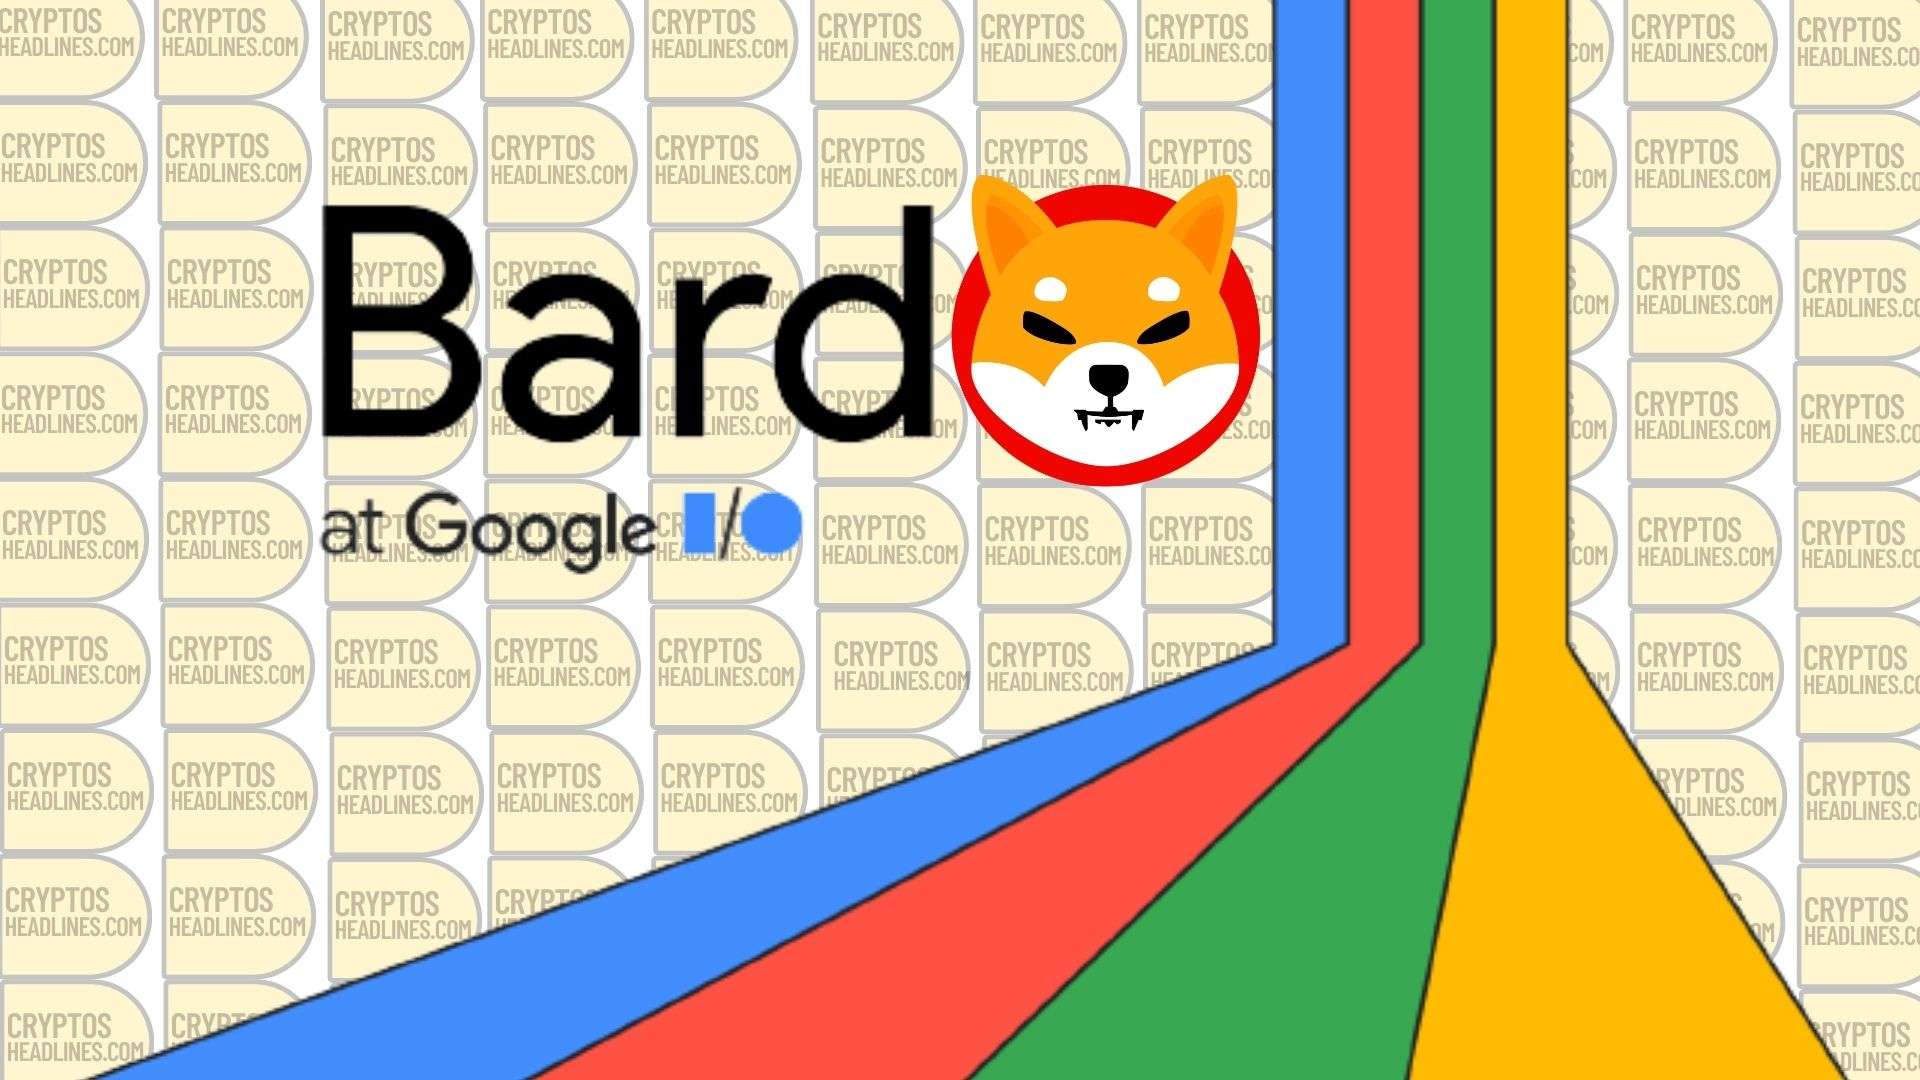 Google Bard Predicts Shiba Inu